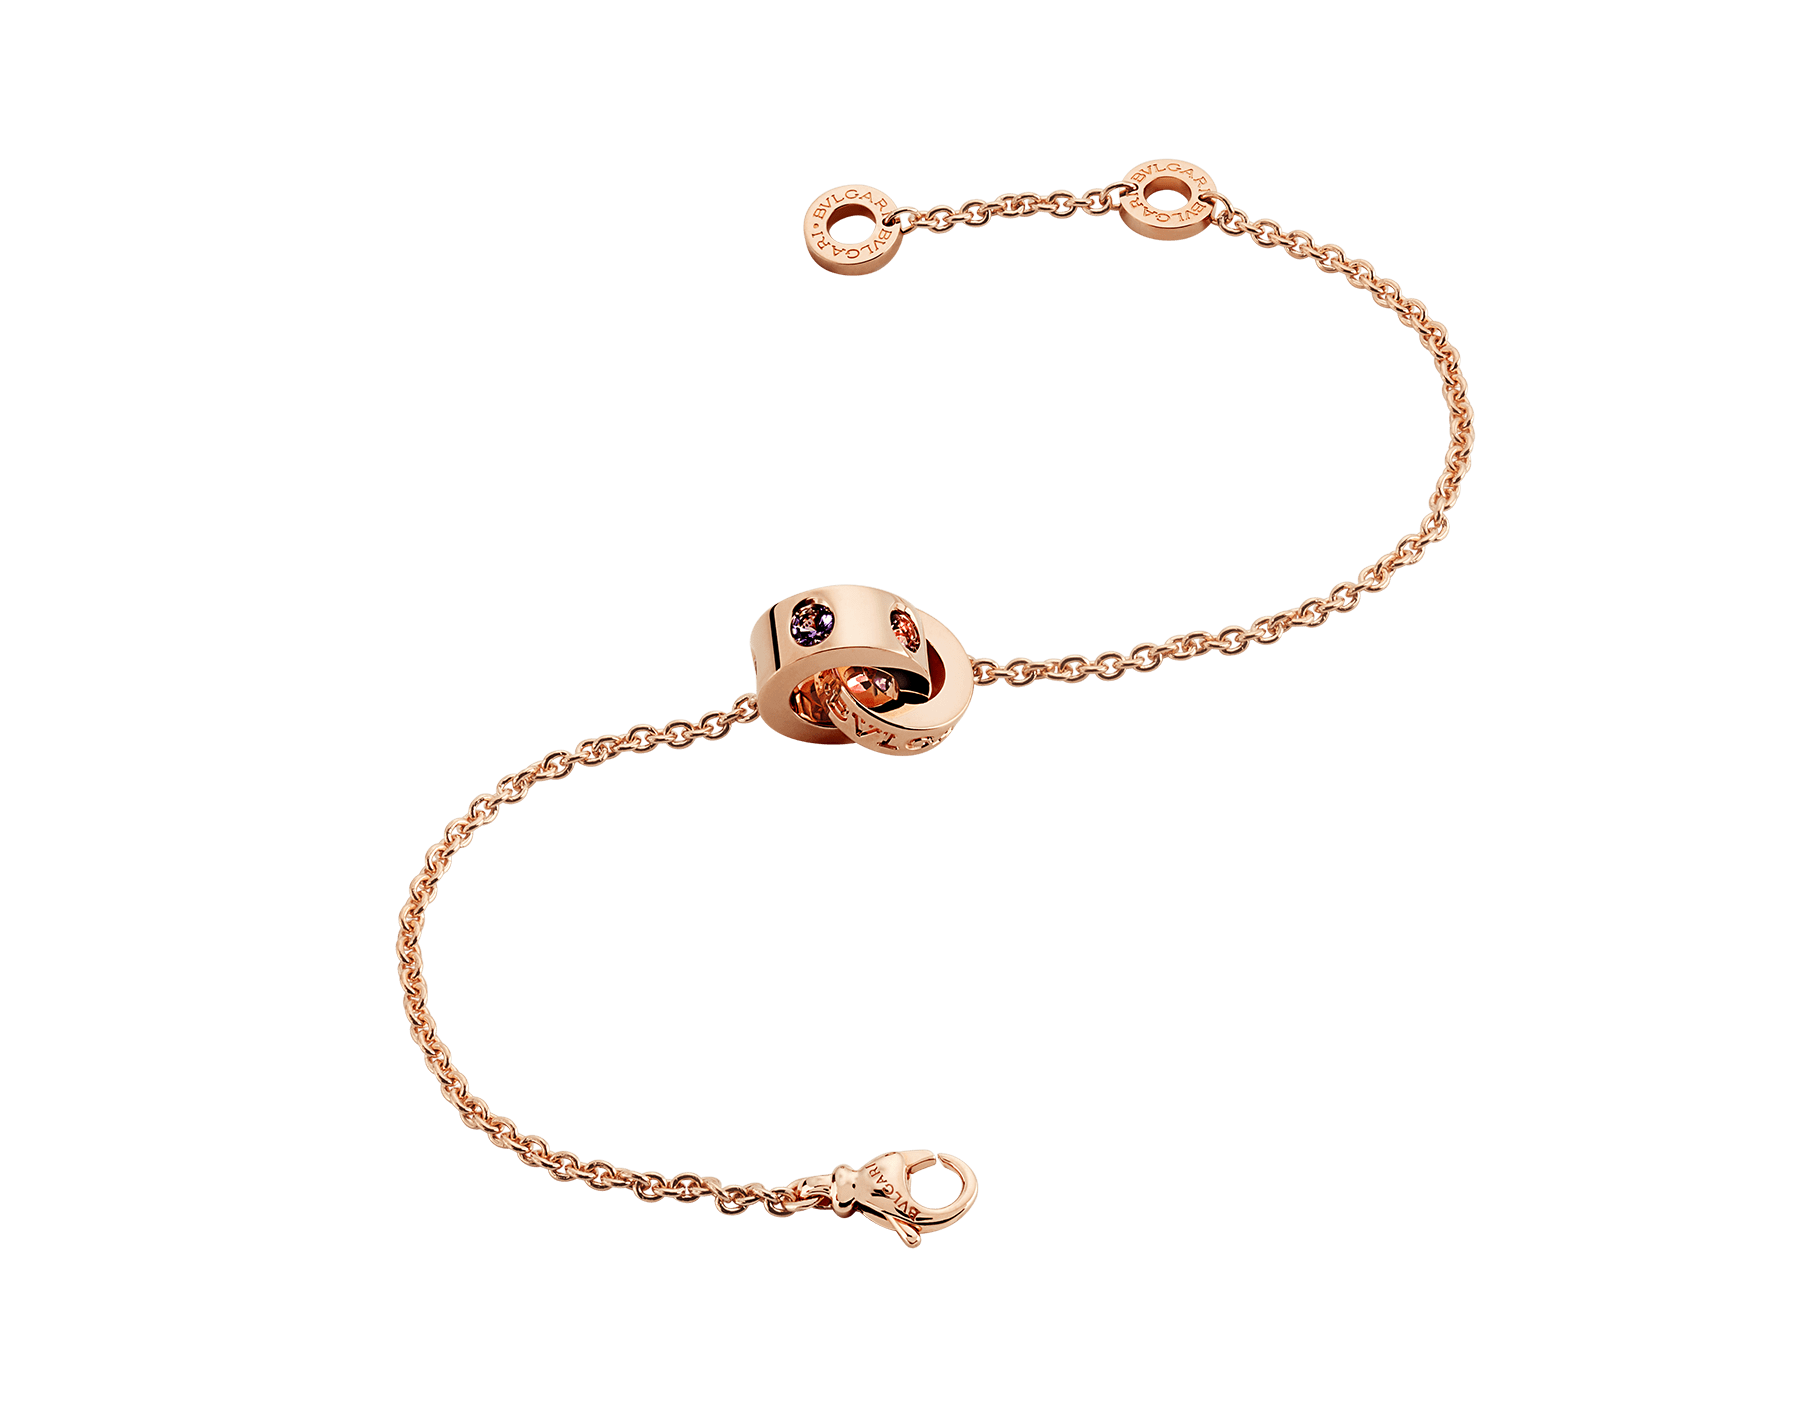 bvlgari pink gold bracelet